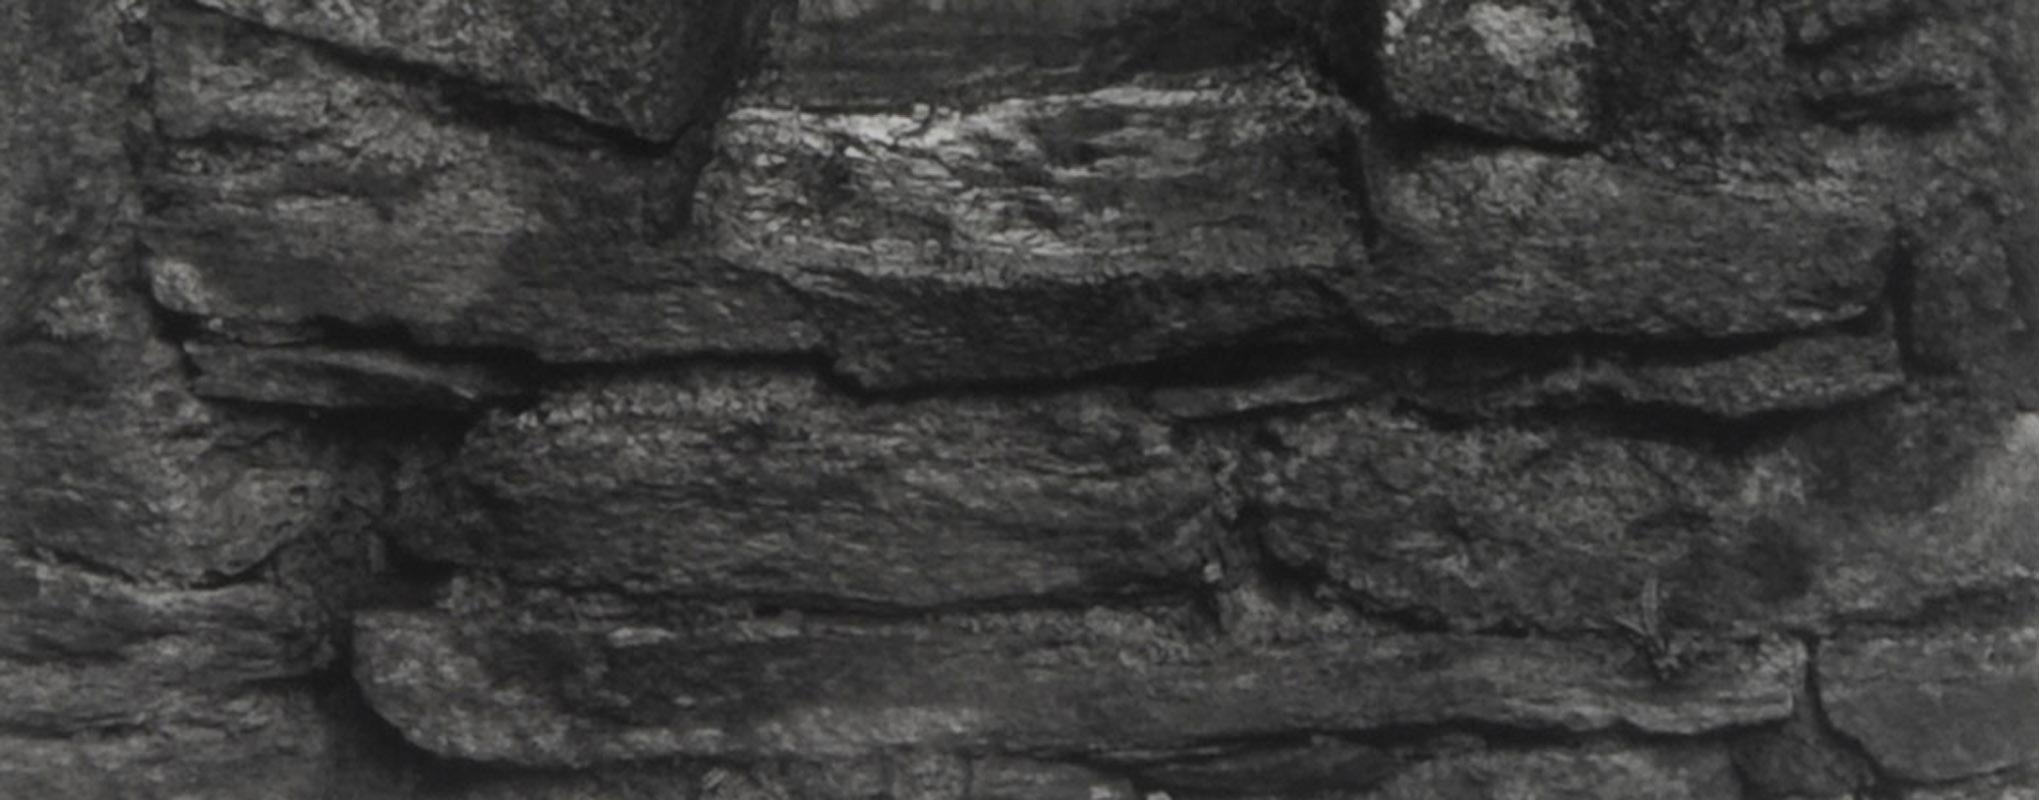 Eingang, Reefert Chuch, Irland
Silbergelatineabzug, 1989
Signiert mit Bleistift unten rechts auf dem Passepartout (siehe Foto)
Aus: Stone Churches of Ireland, veröffentlicht von Lodima Press, Band 9
Bildgröße: 9 1/2 x 8 Zoll
Rahmengröße: 22 3/4 x 18